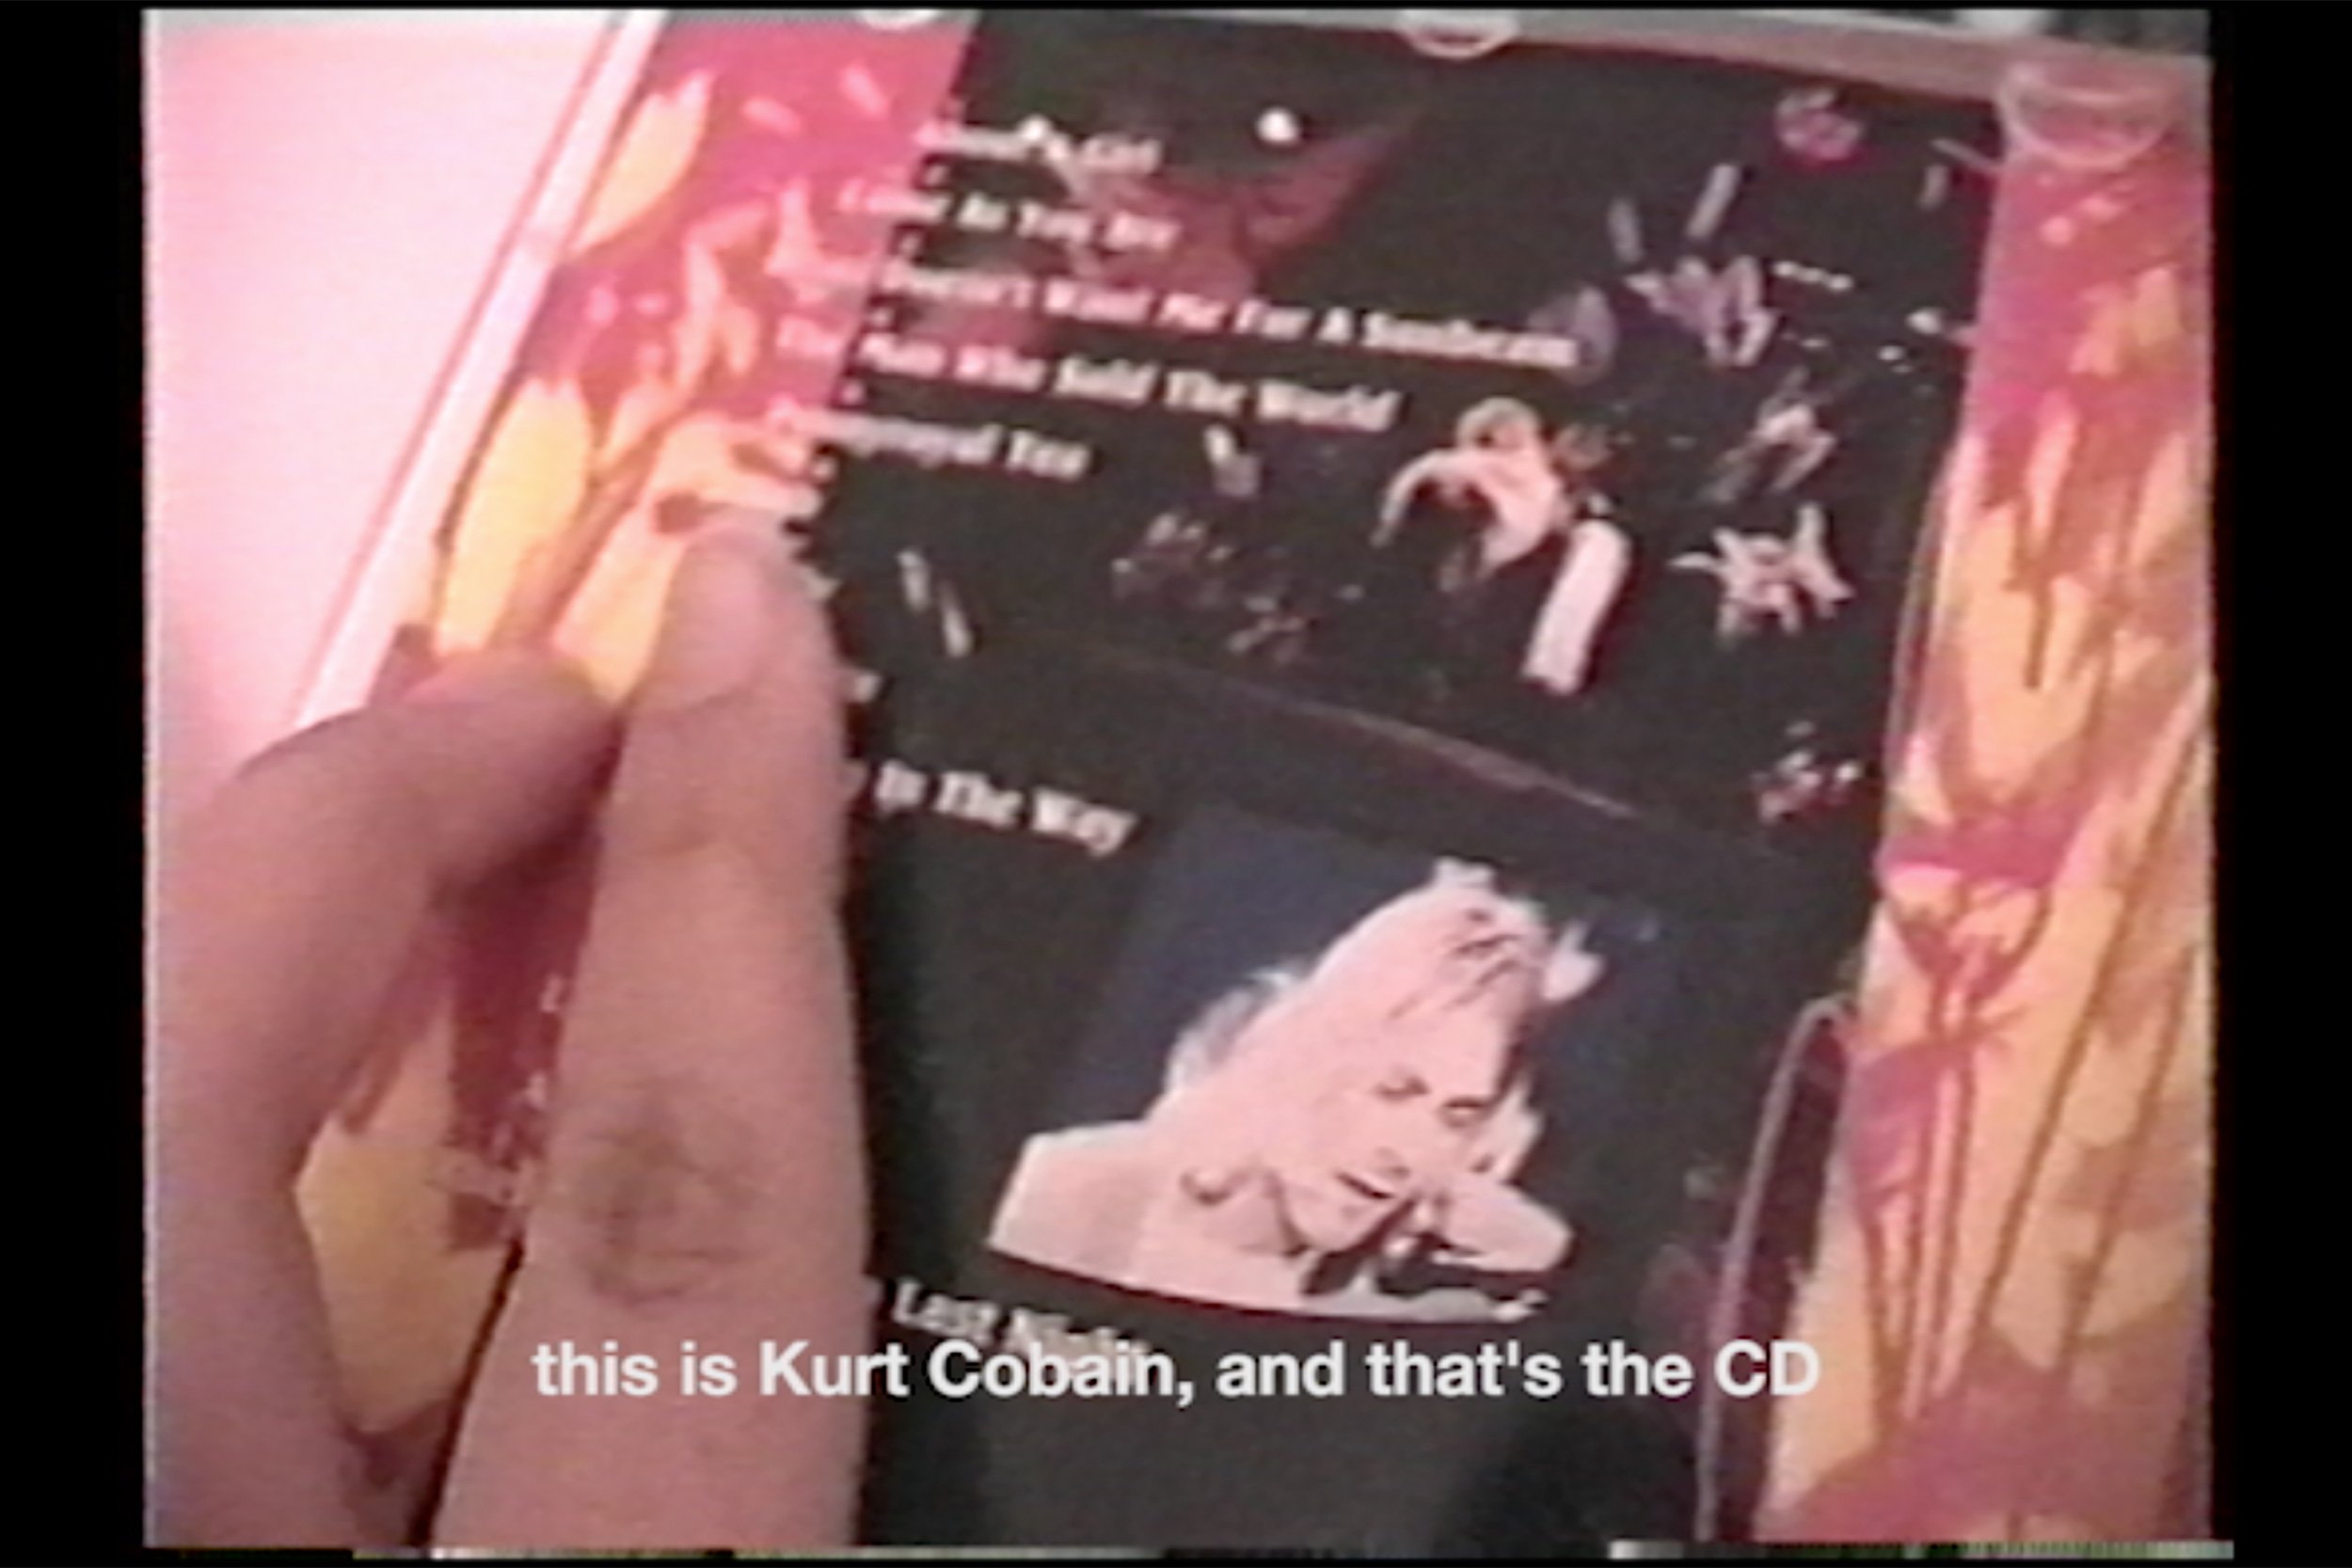   Qu’en est-il de Kurt et Zinnia ?    Heart-Shaped Box  du groupe grunge Nirvana est un exemple de culture populaire américaine qui a trouvé un écho significatif auprès d’un public à qui pourtant cette musique n’était pas destinée. L’une des première